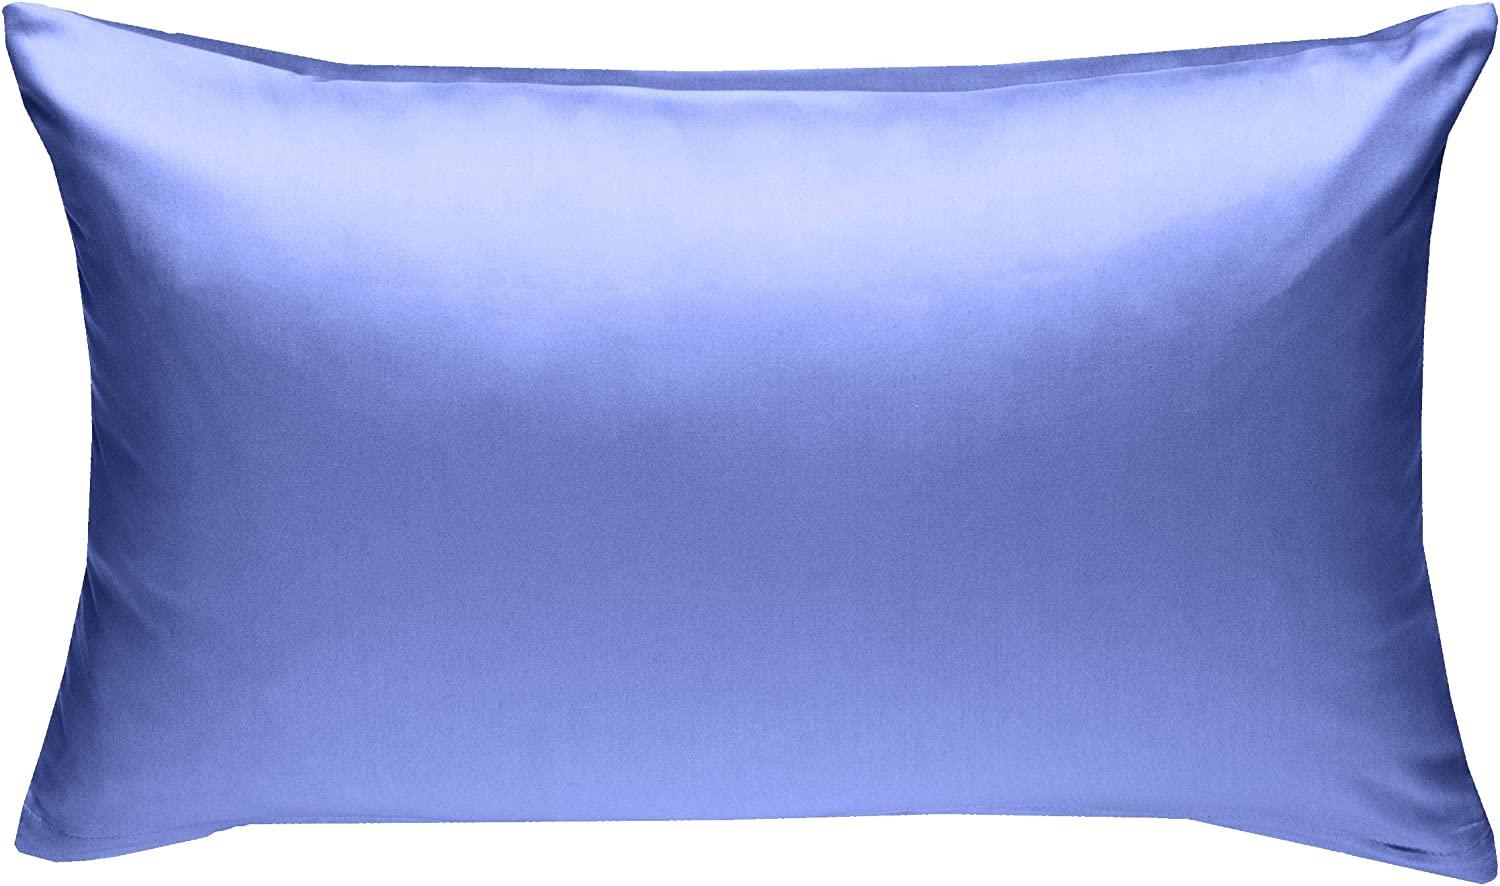 Bettwaesche-mit-Stil Mako-Satin / Baumwollsatin Bettwäsche uni / einfarbig hellblau Kissenbezug 60x80 cm Bild 1